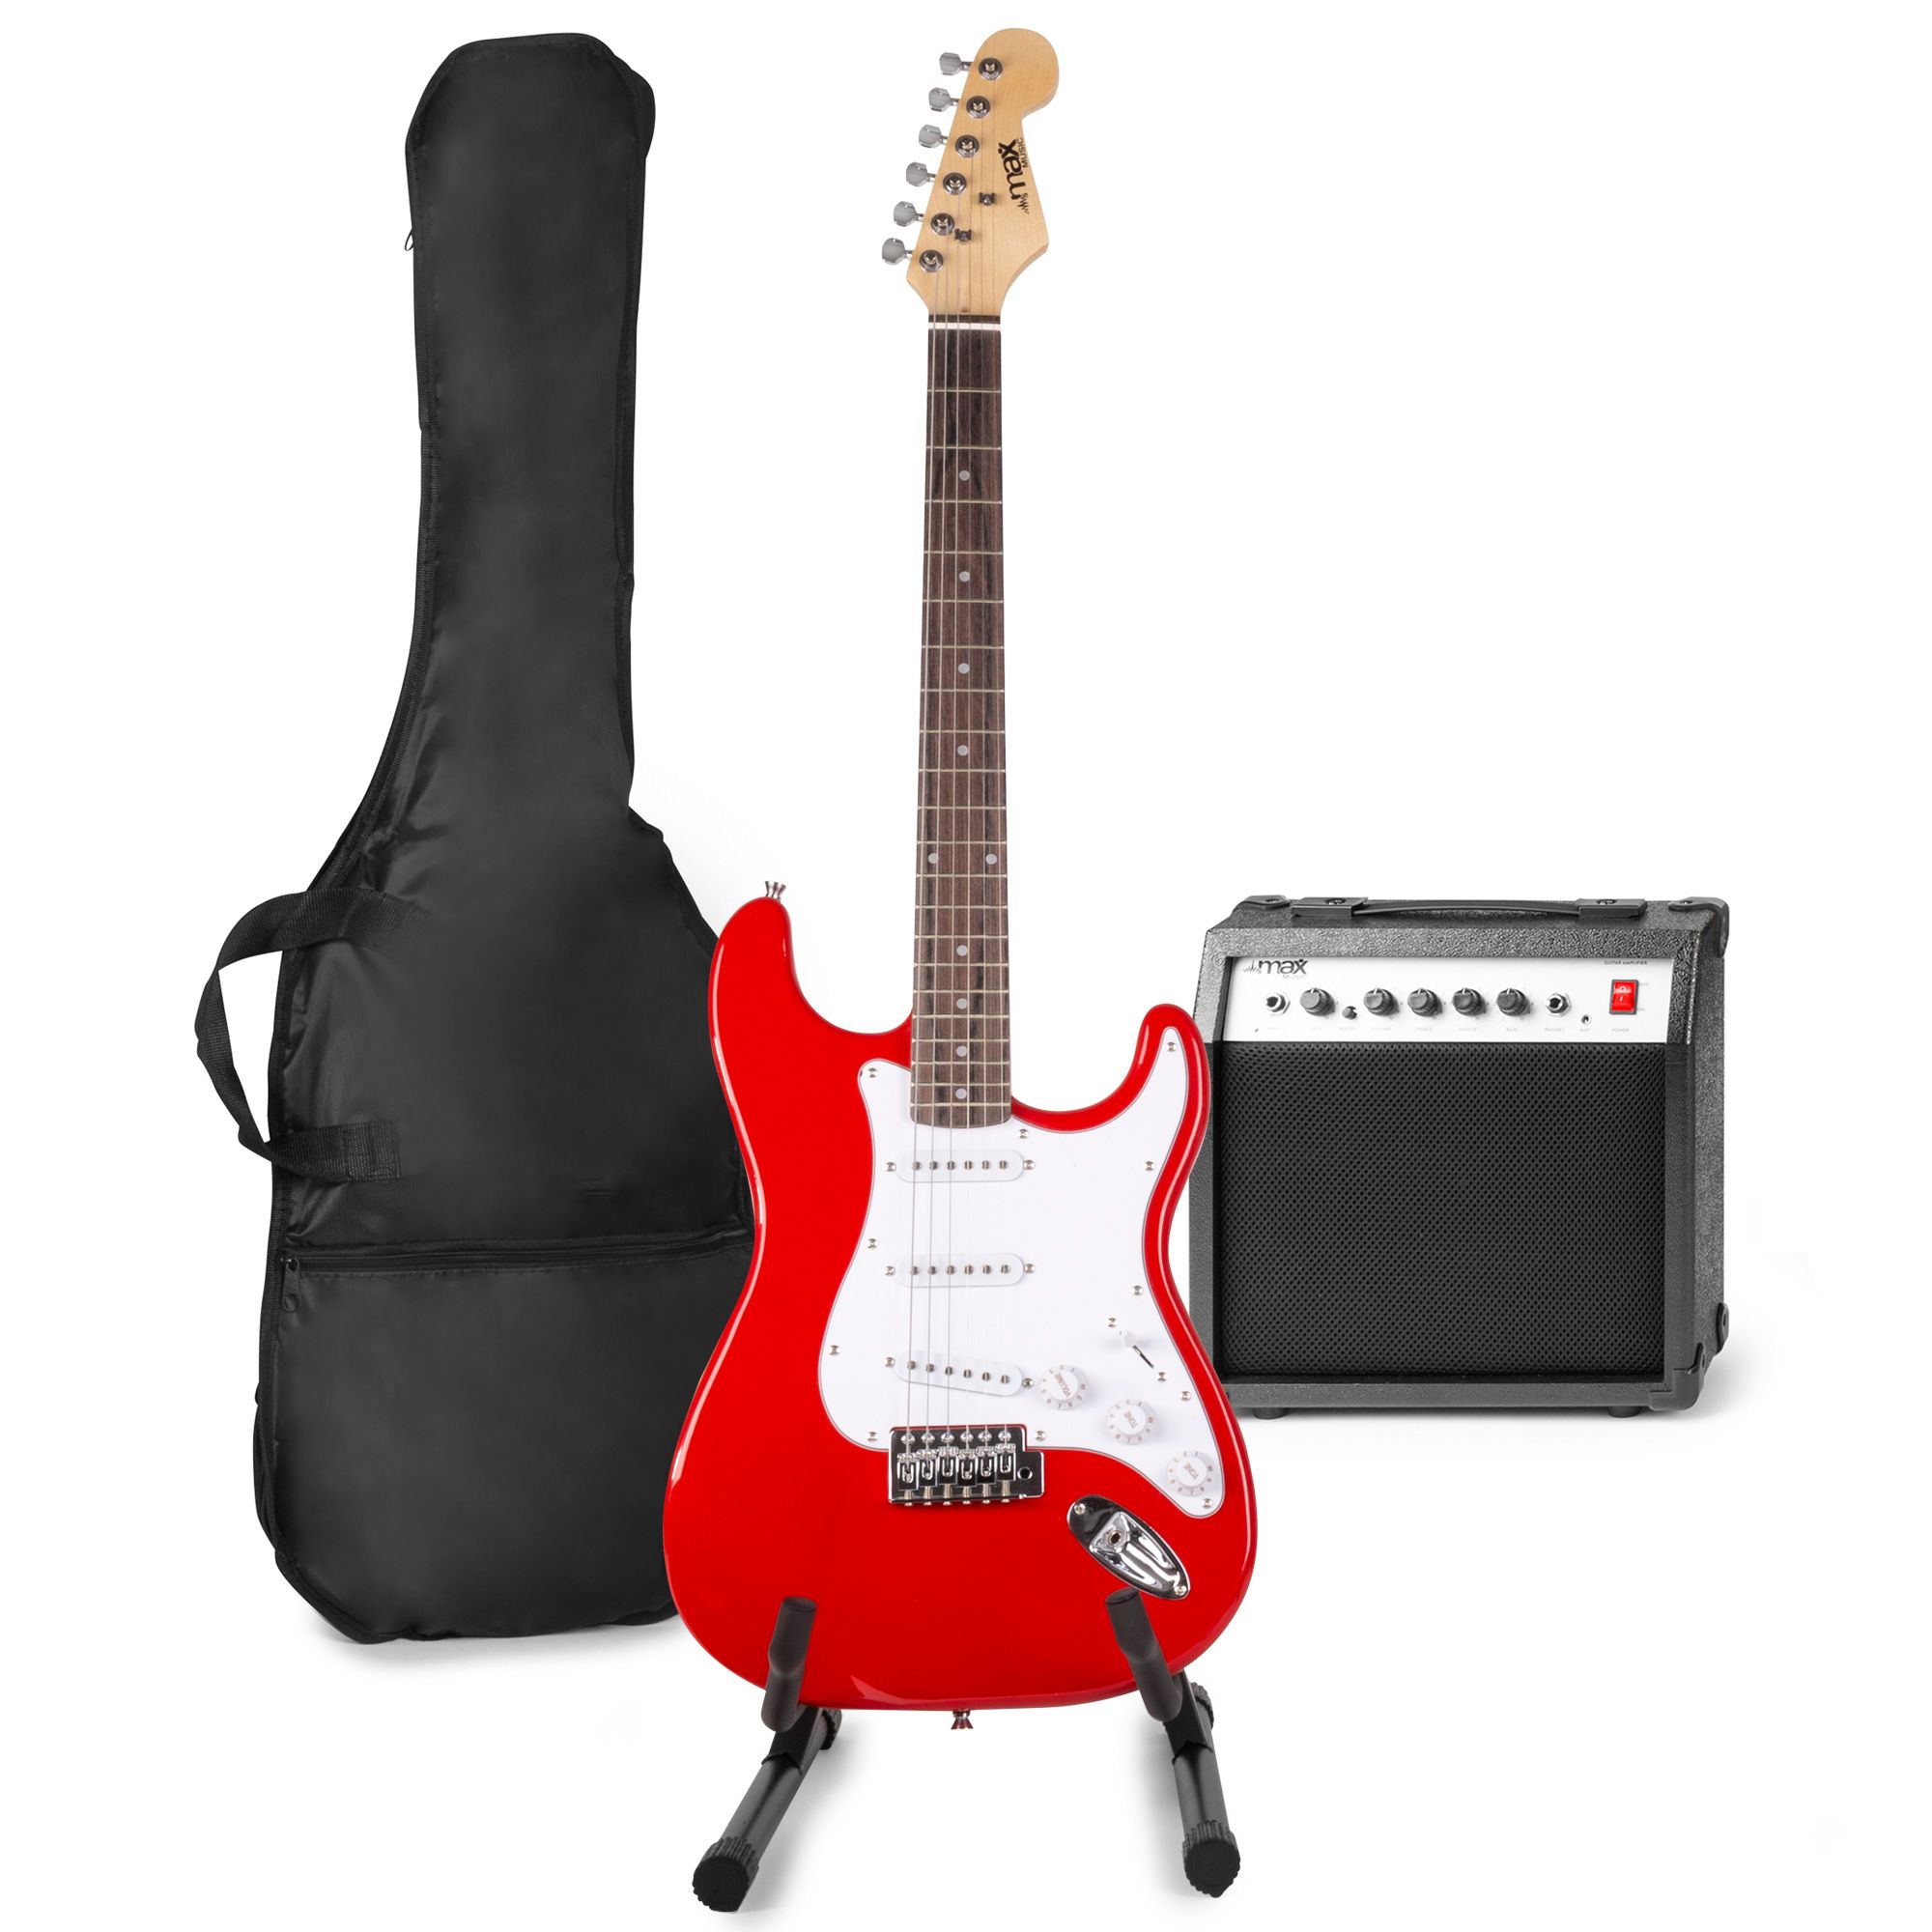 Elektrische gitaar met gitaar versterker - MAX Gigkit - Perfect voor beginners - incl. gitaar standaard, gitaar stemapparaat, gitaartas en plectrum - Rood